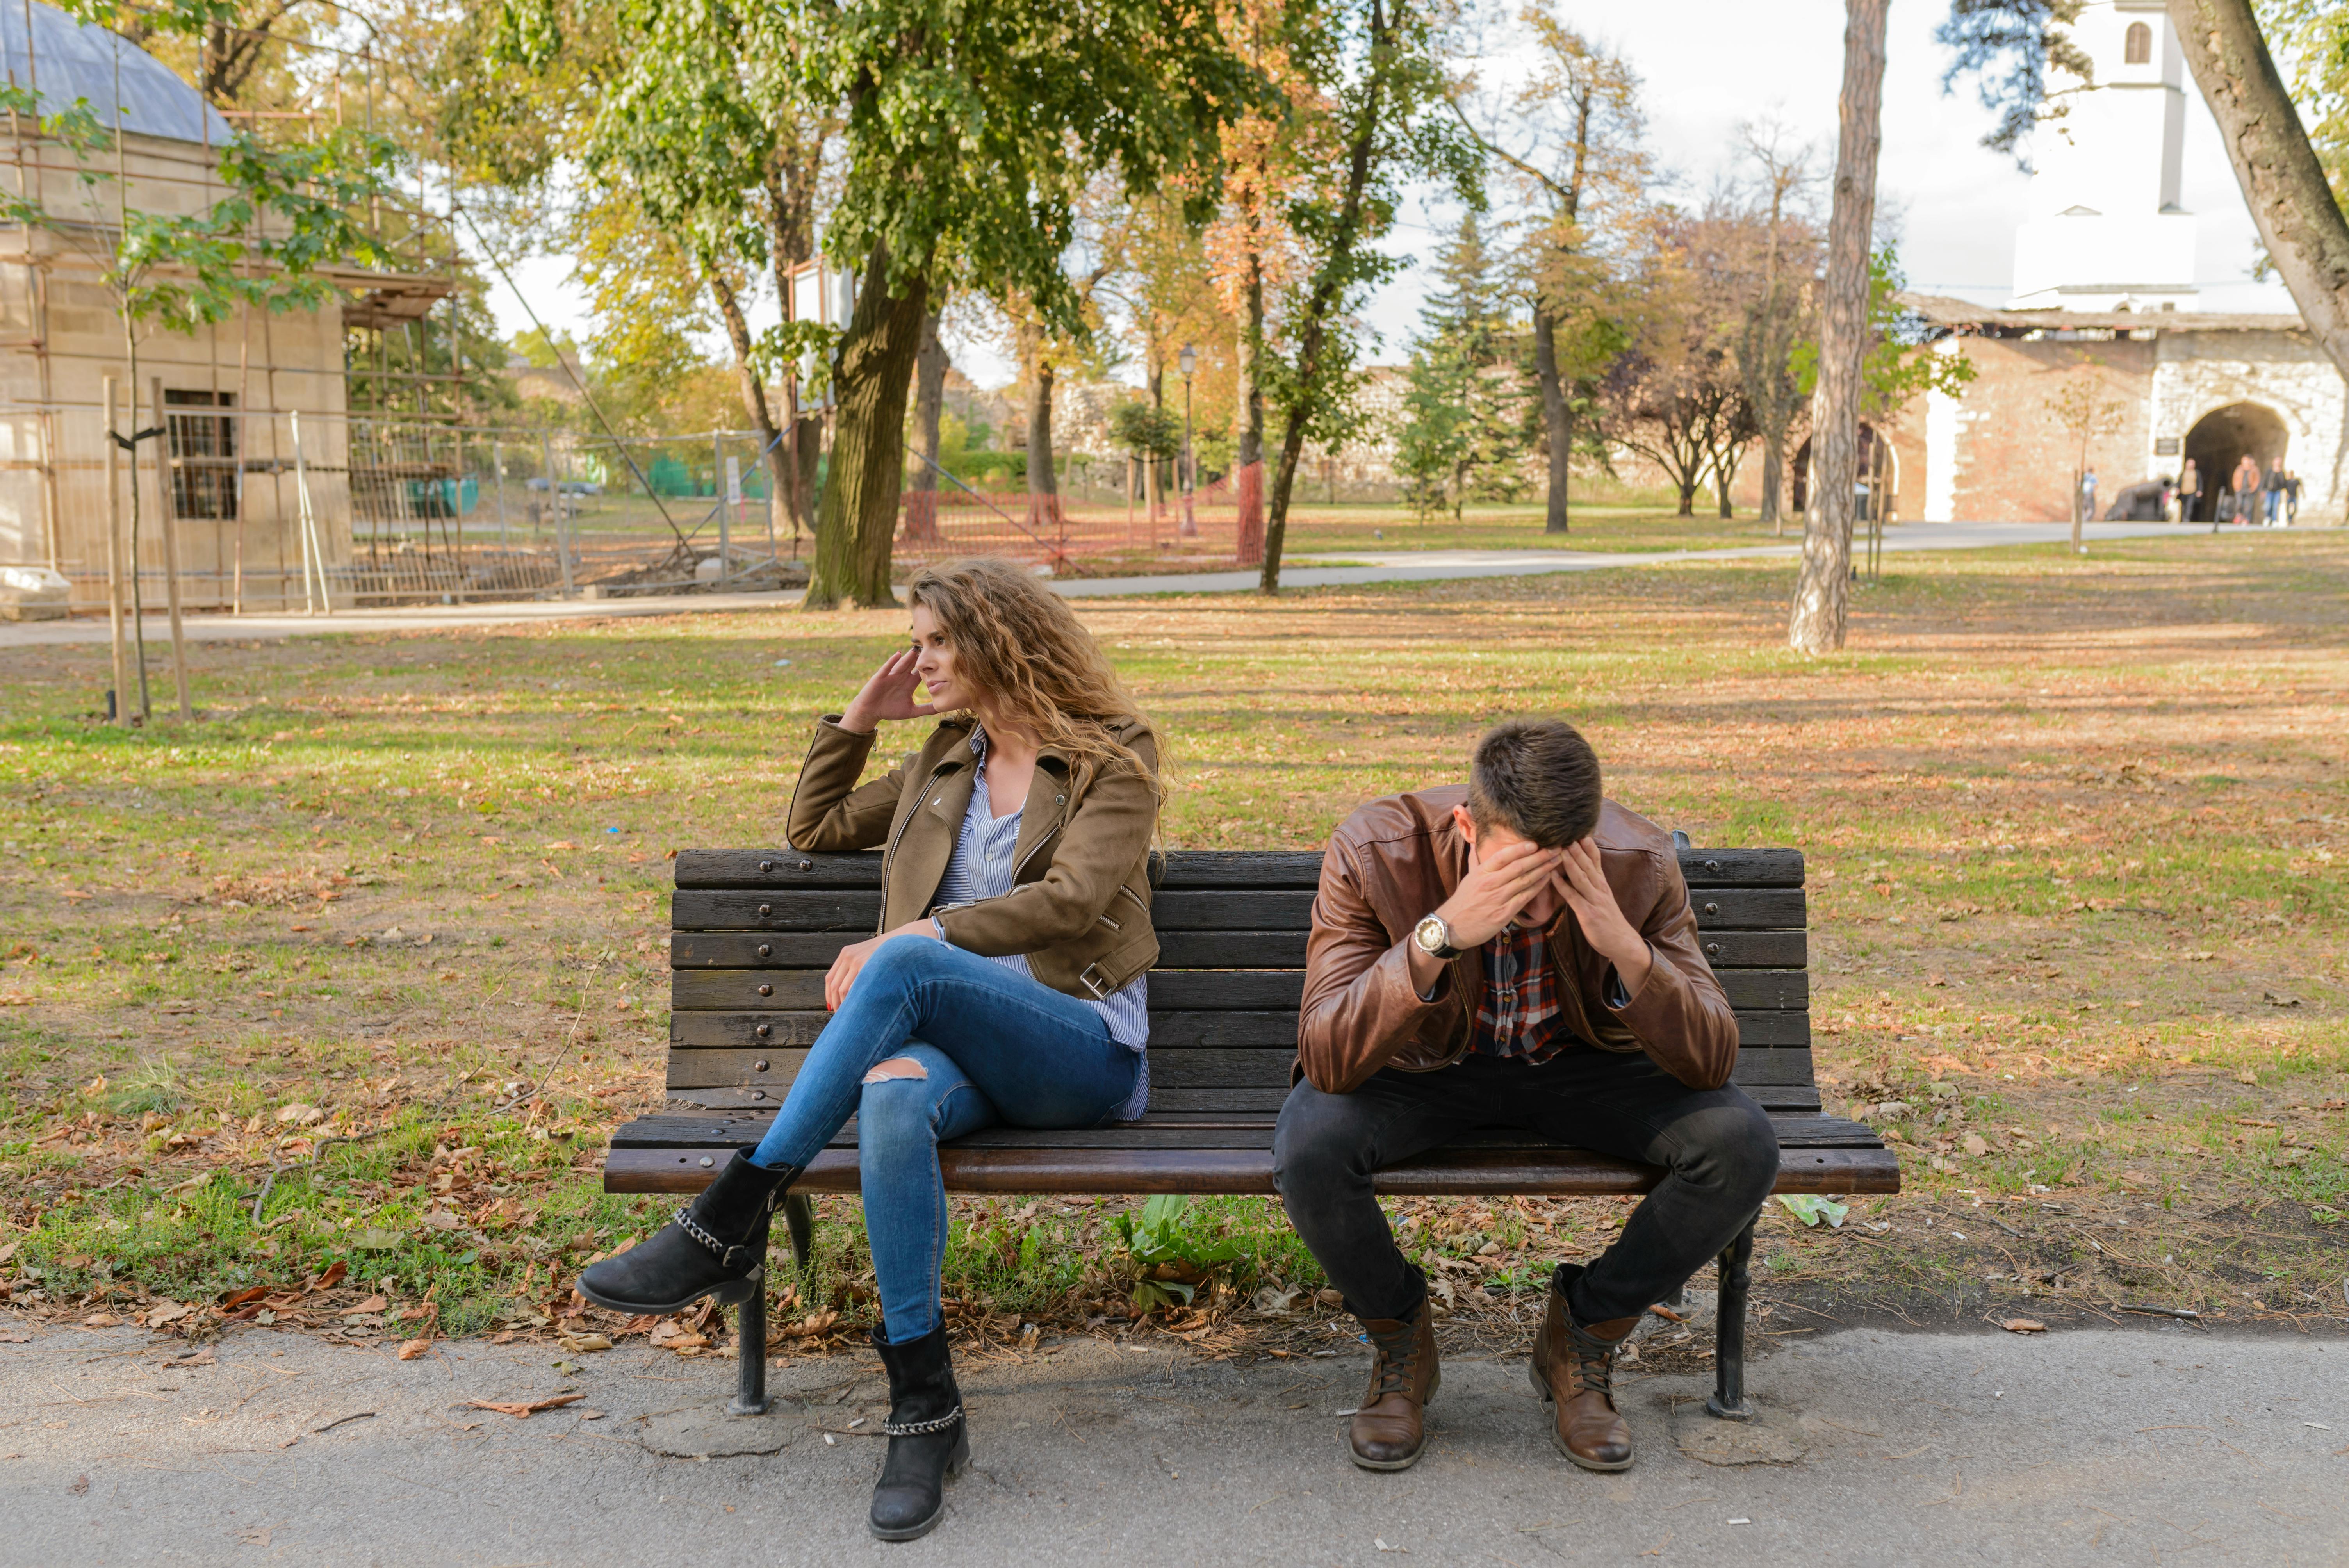 Una mujer enfadada sentada junto a un hombre que llora en un banco del parque | Fuente: Pexels